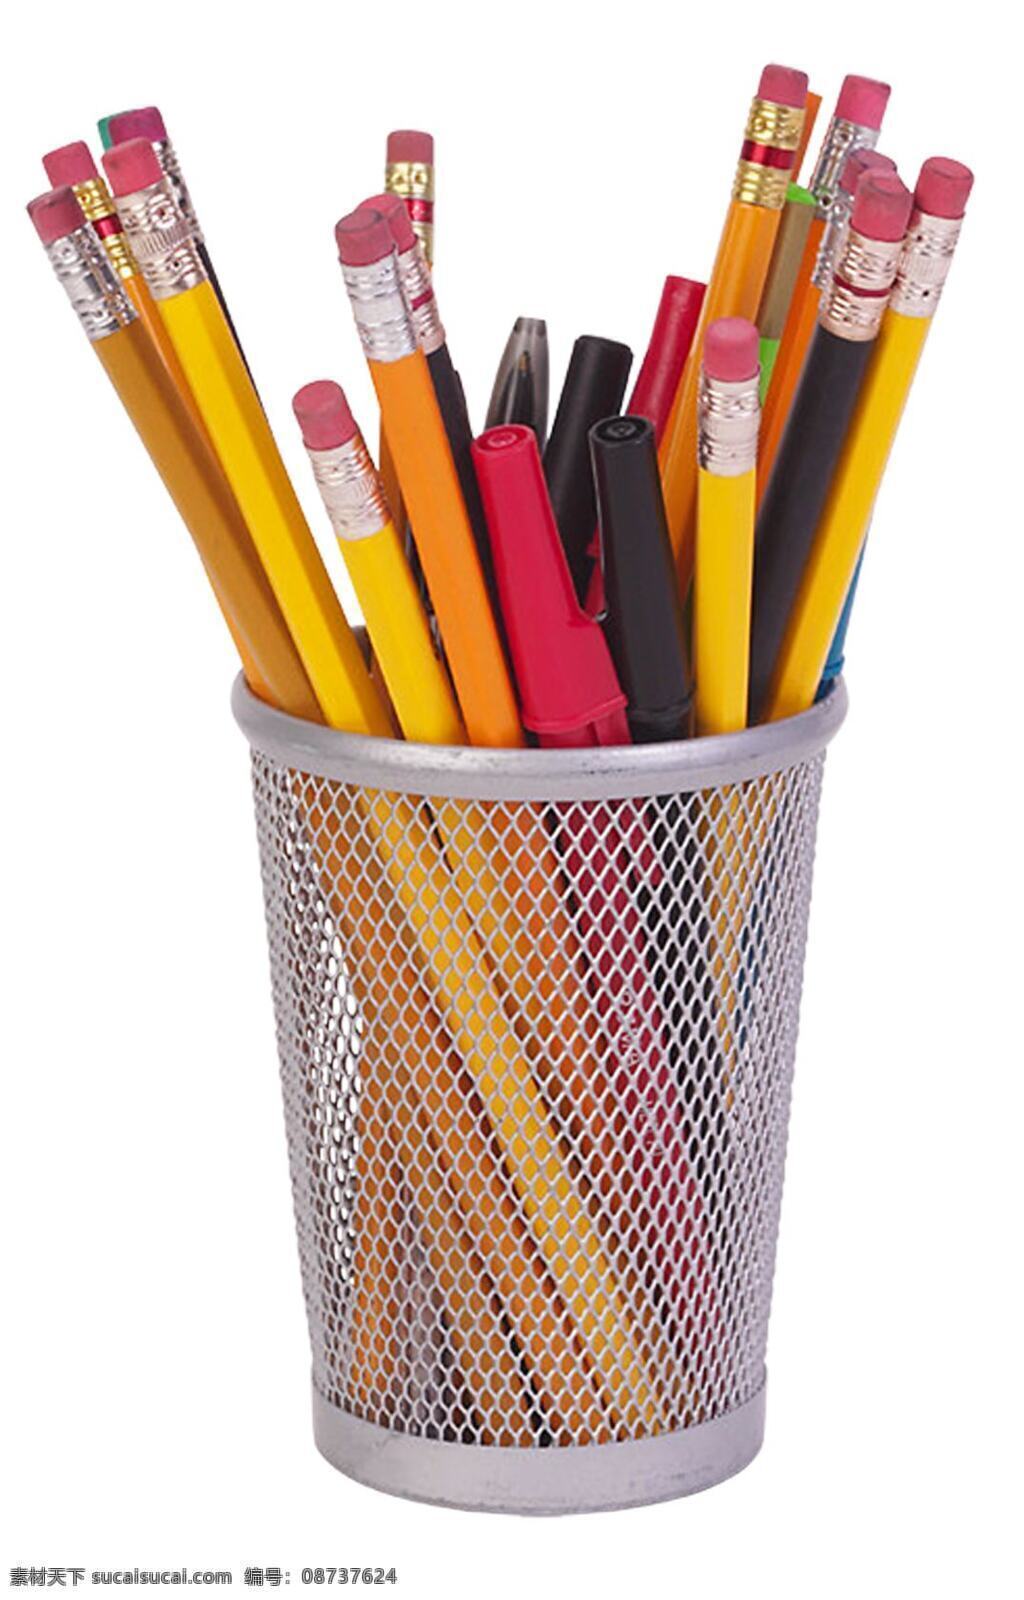 镂空 笔筒 彩色 铅笔 笔 绘画笔 彩色铅笔 文具 学习用品 办公学习 生活百科